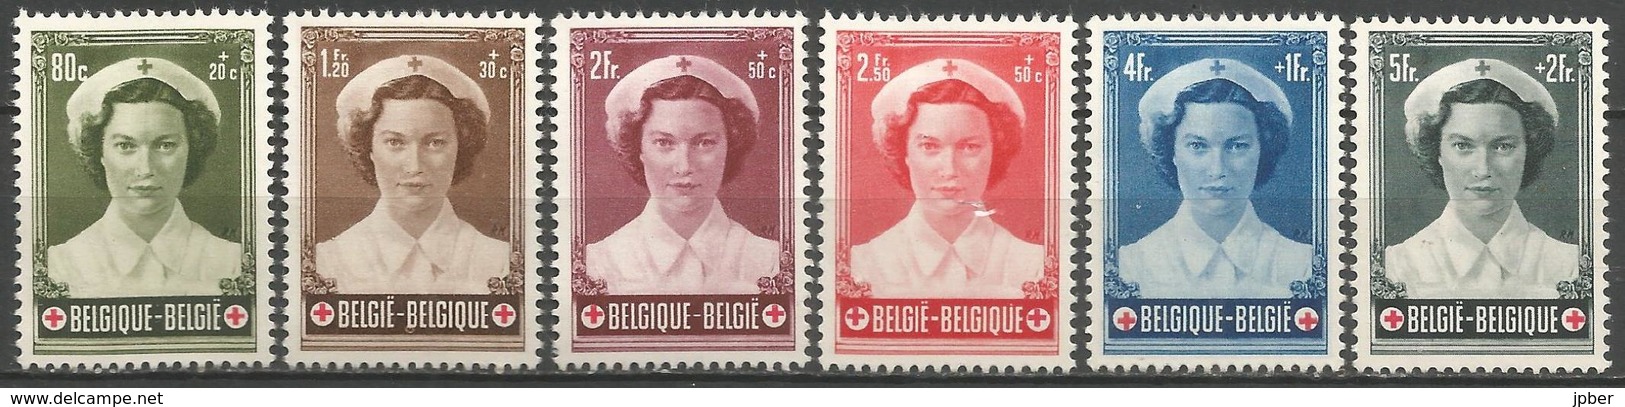 (E058) BELGIQUE - N°912à917 * - Croix-Rouge - Princesse Joséphine -Charlotte - Ongebruikt